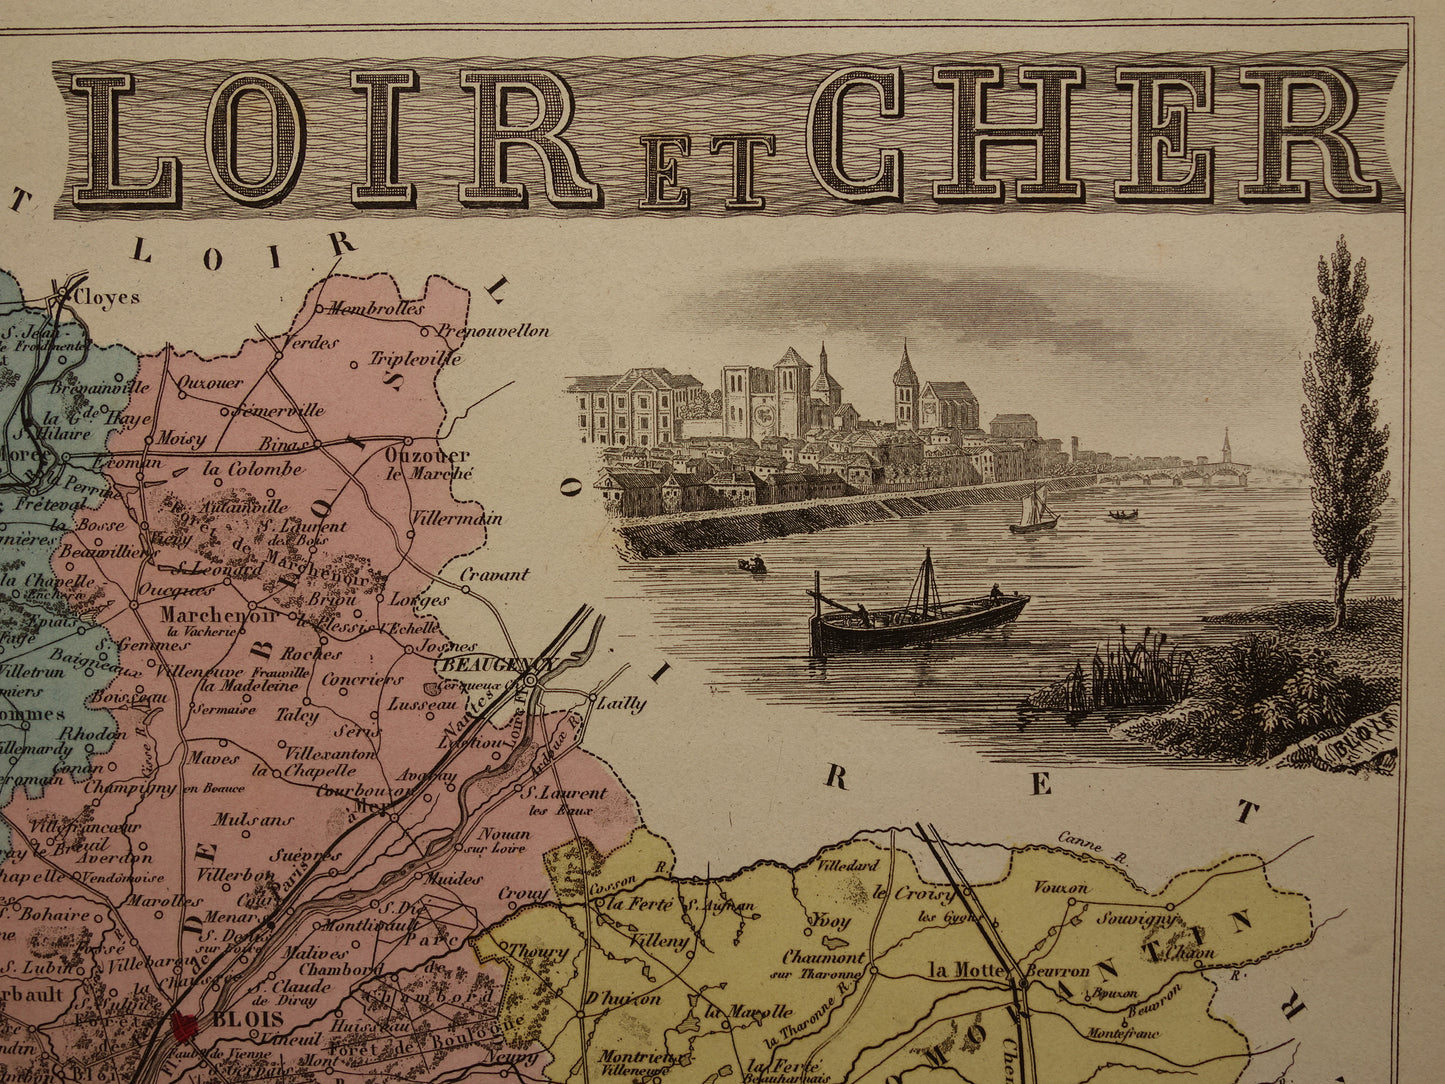 Oude kaart van Loir et Cher departement in Frankrijk uit 1876 originele antieke handgekleurde landkaart Blois Vendôme Vineuil Salbris